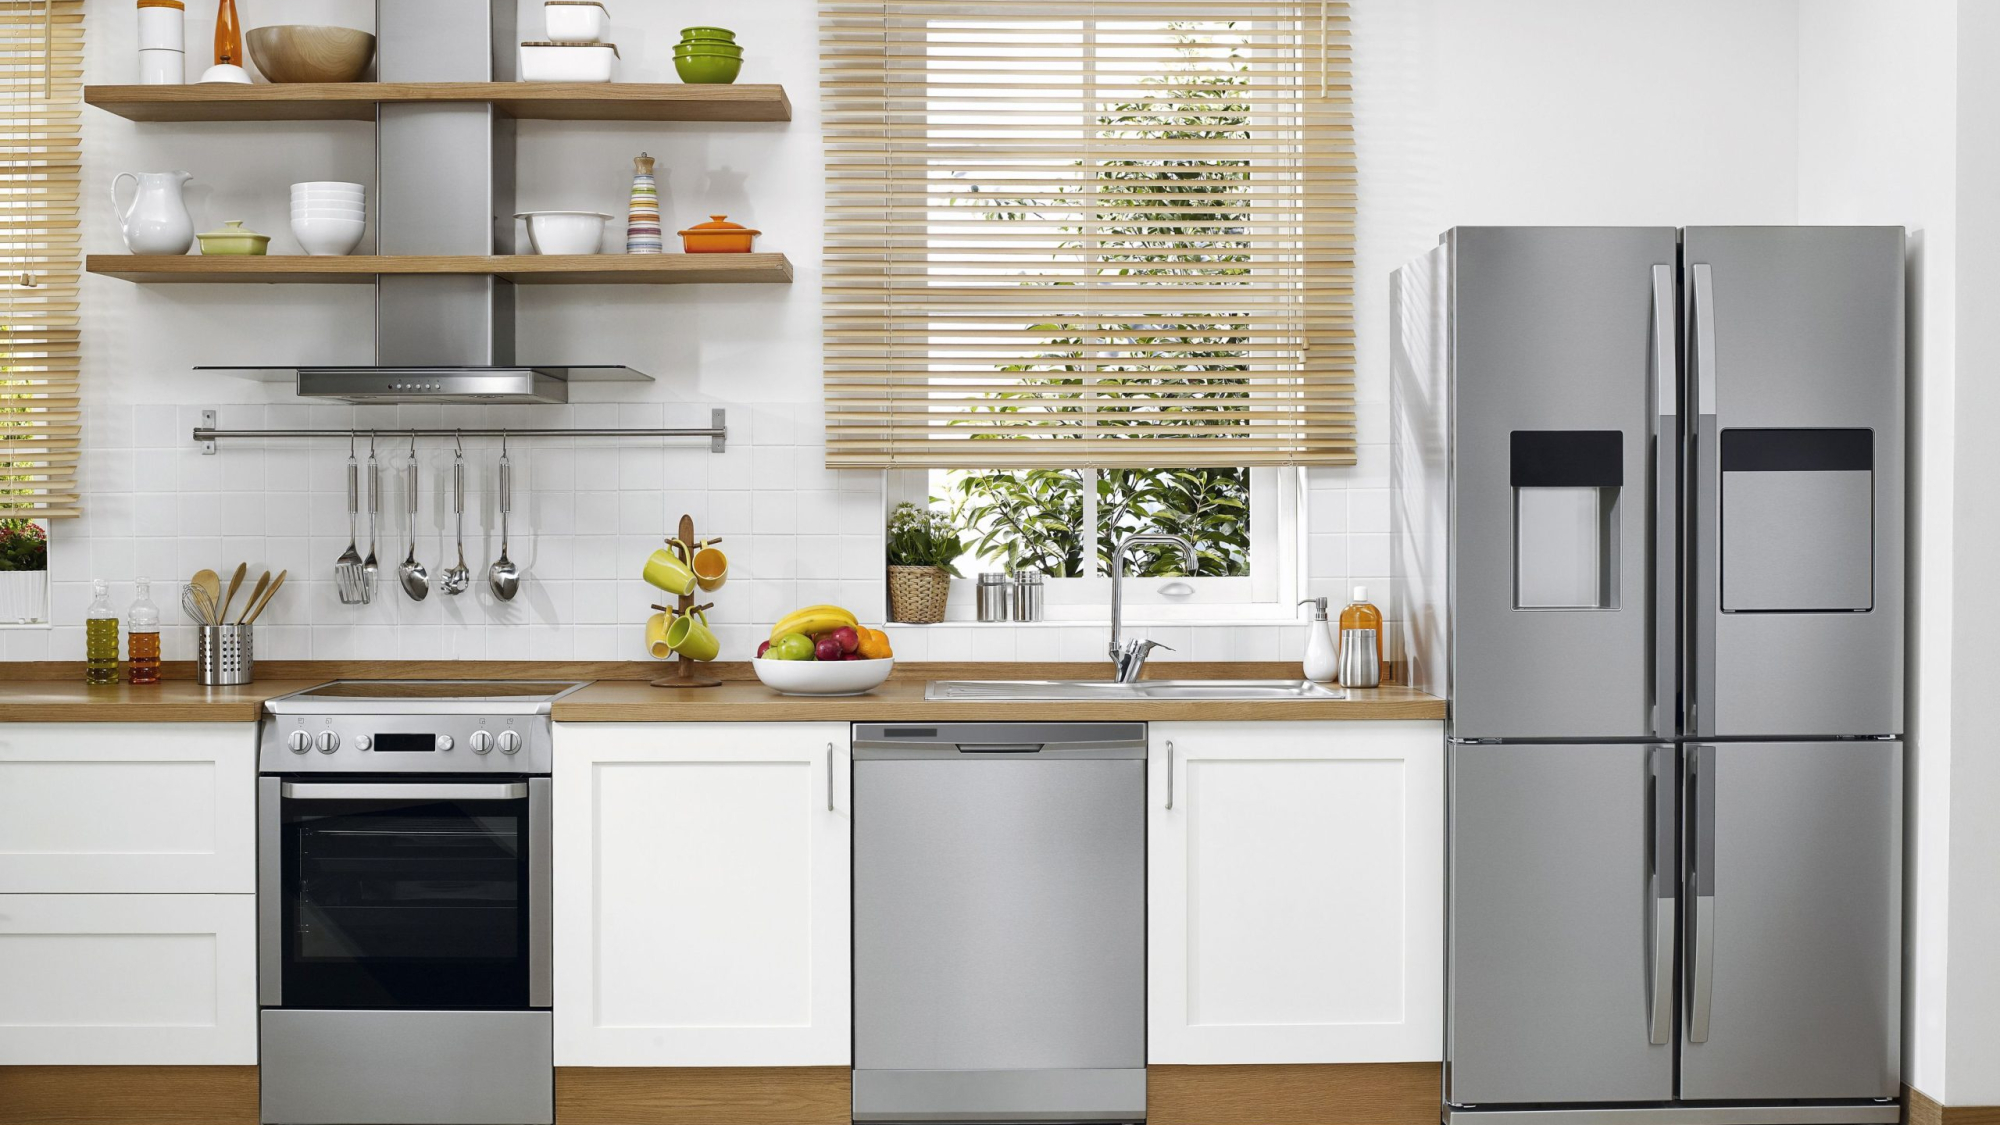 Tips to make major kitchen appliance last longer